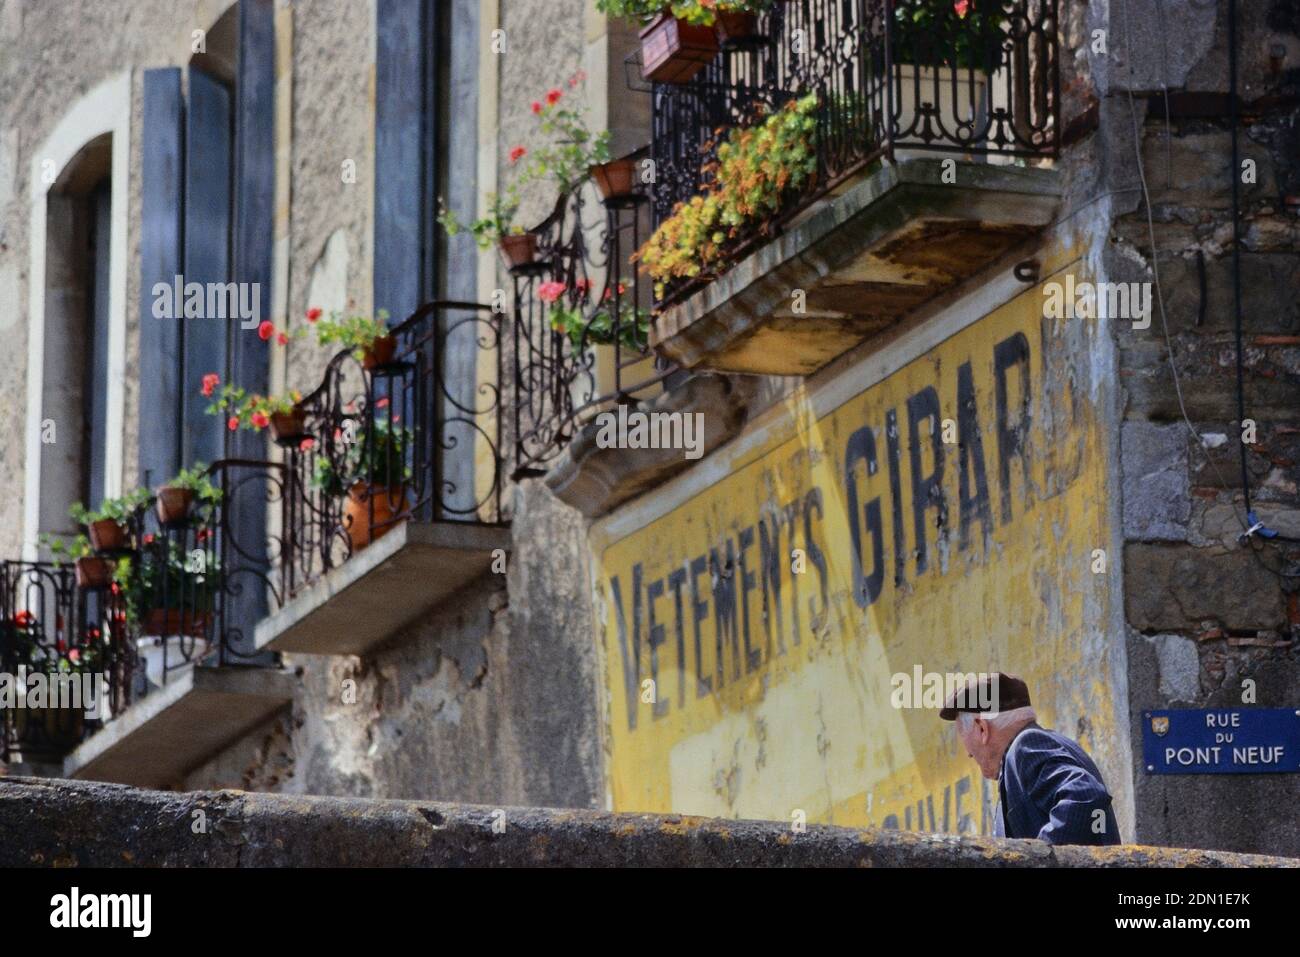 Der alte Franzose in einer Baskenmütze ging an einer alten bemalten Werbung, Limoux, vorbei. Languedoc Südfrankreich. Europa Stockfoto